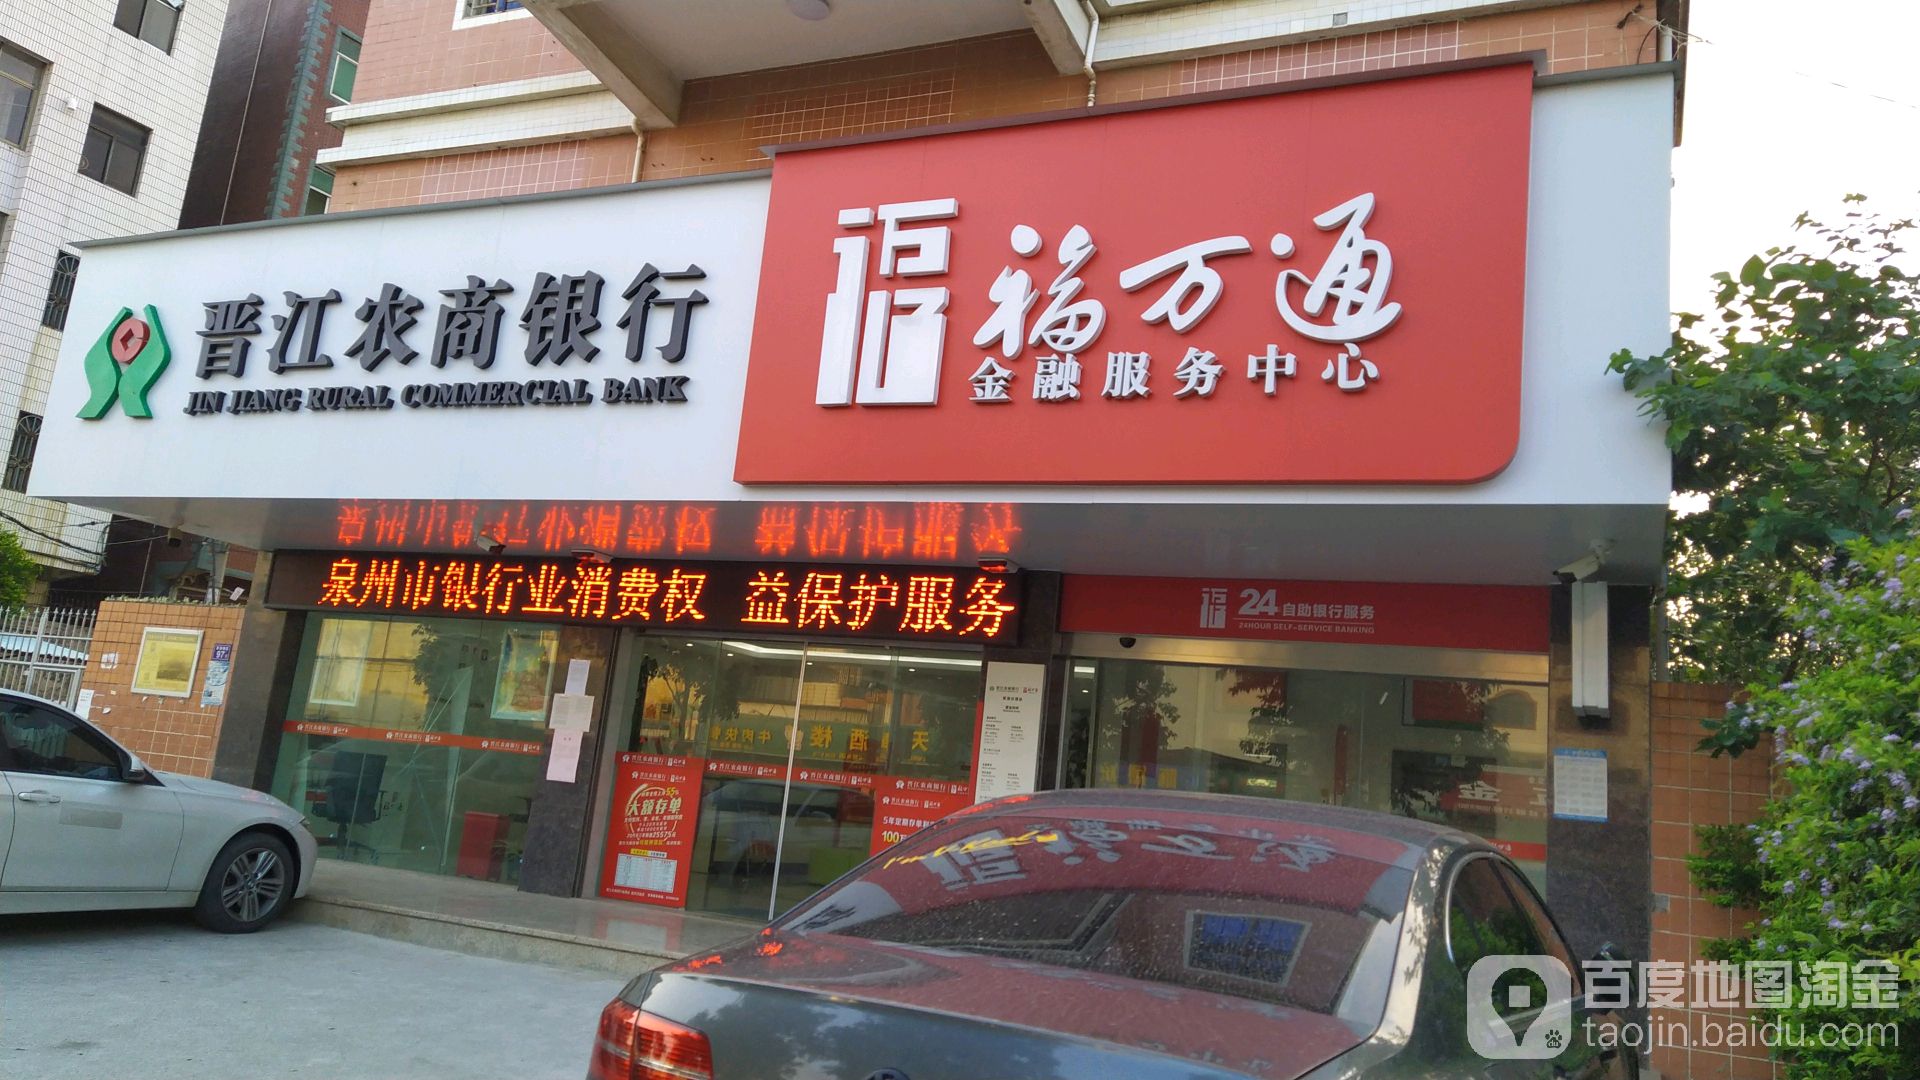 晋江市农村商业银行24小时自助银行(草湖分理处)